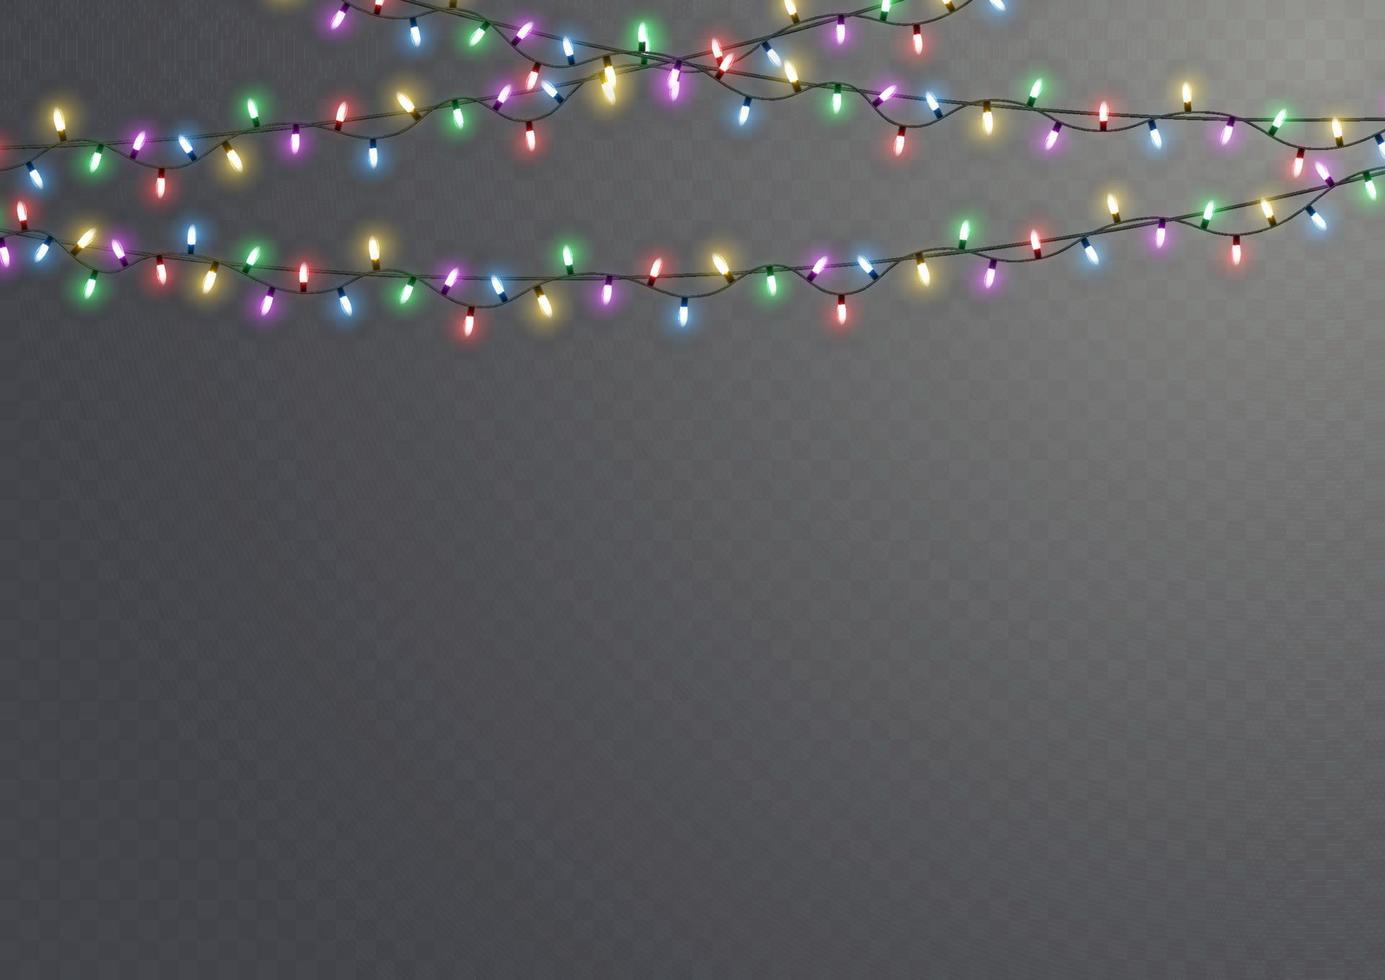 Kerstmis lichten. vector lijn met gloeiend licht lampen.set van gouden Kerstmis gloeiend slinger LED neon lamp illustratie. Kerstmis lichten geïsoleerd Aan transparant achtergrond voor kaarten, spandoeken, posters